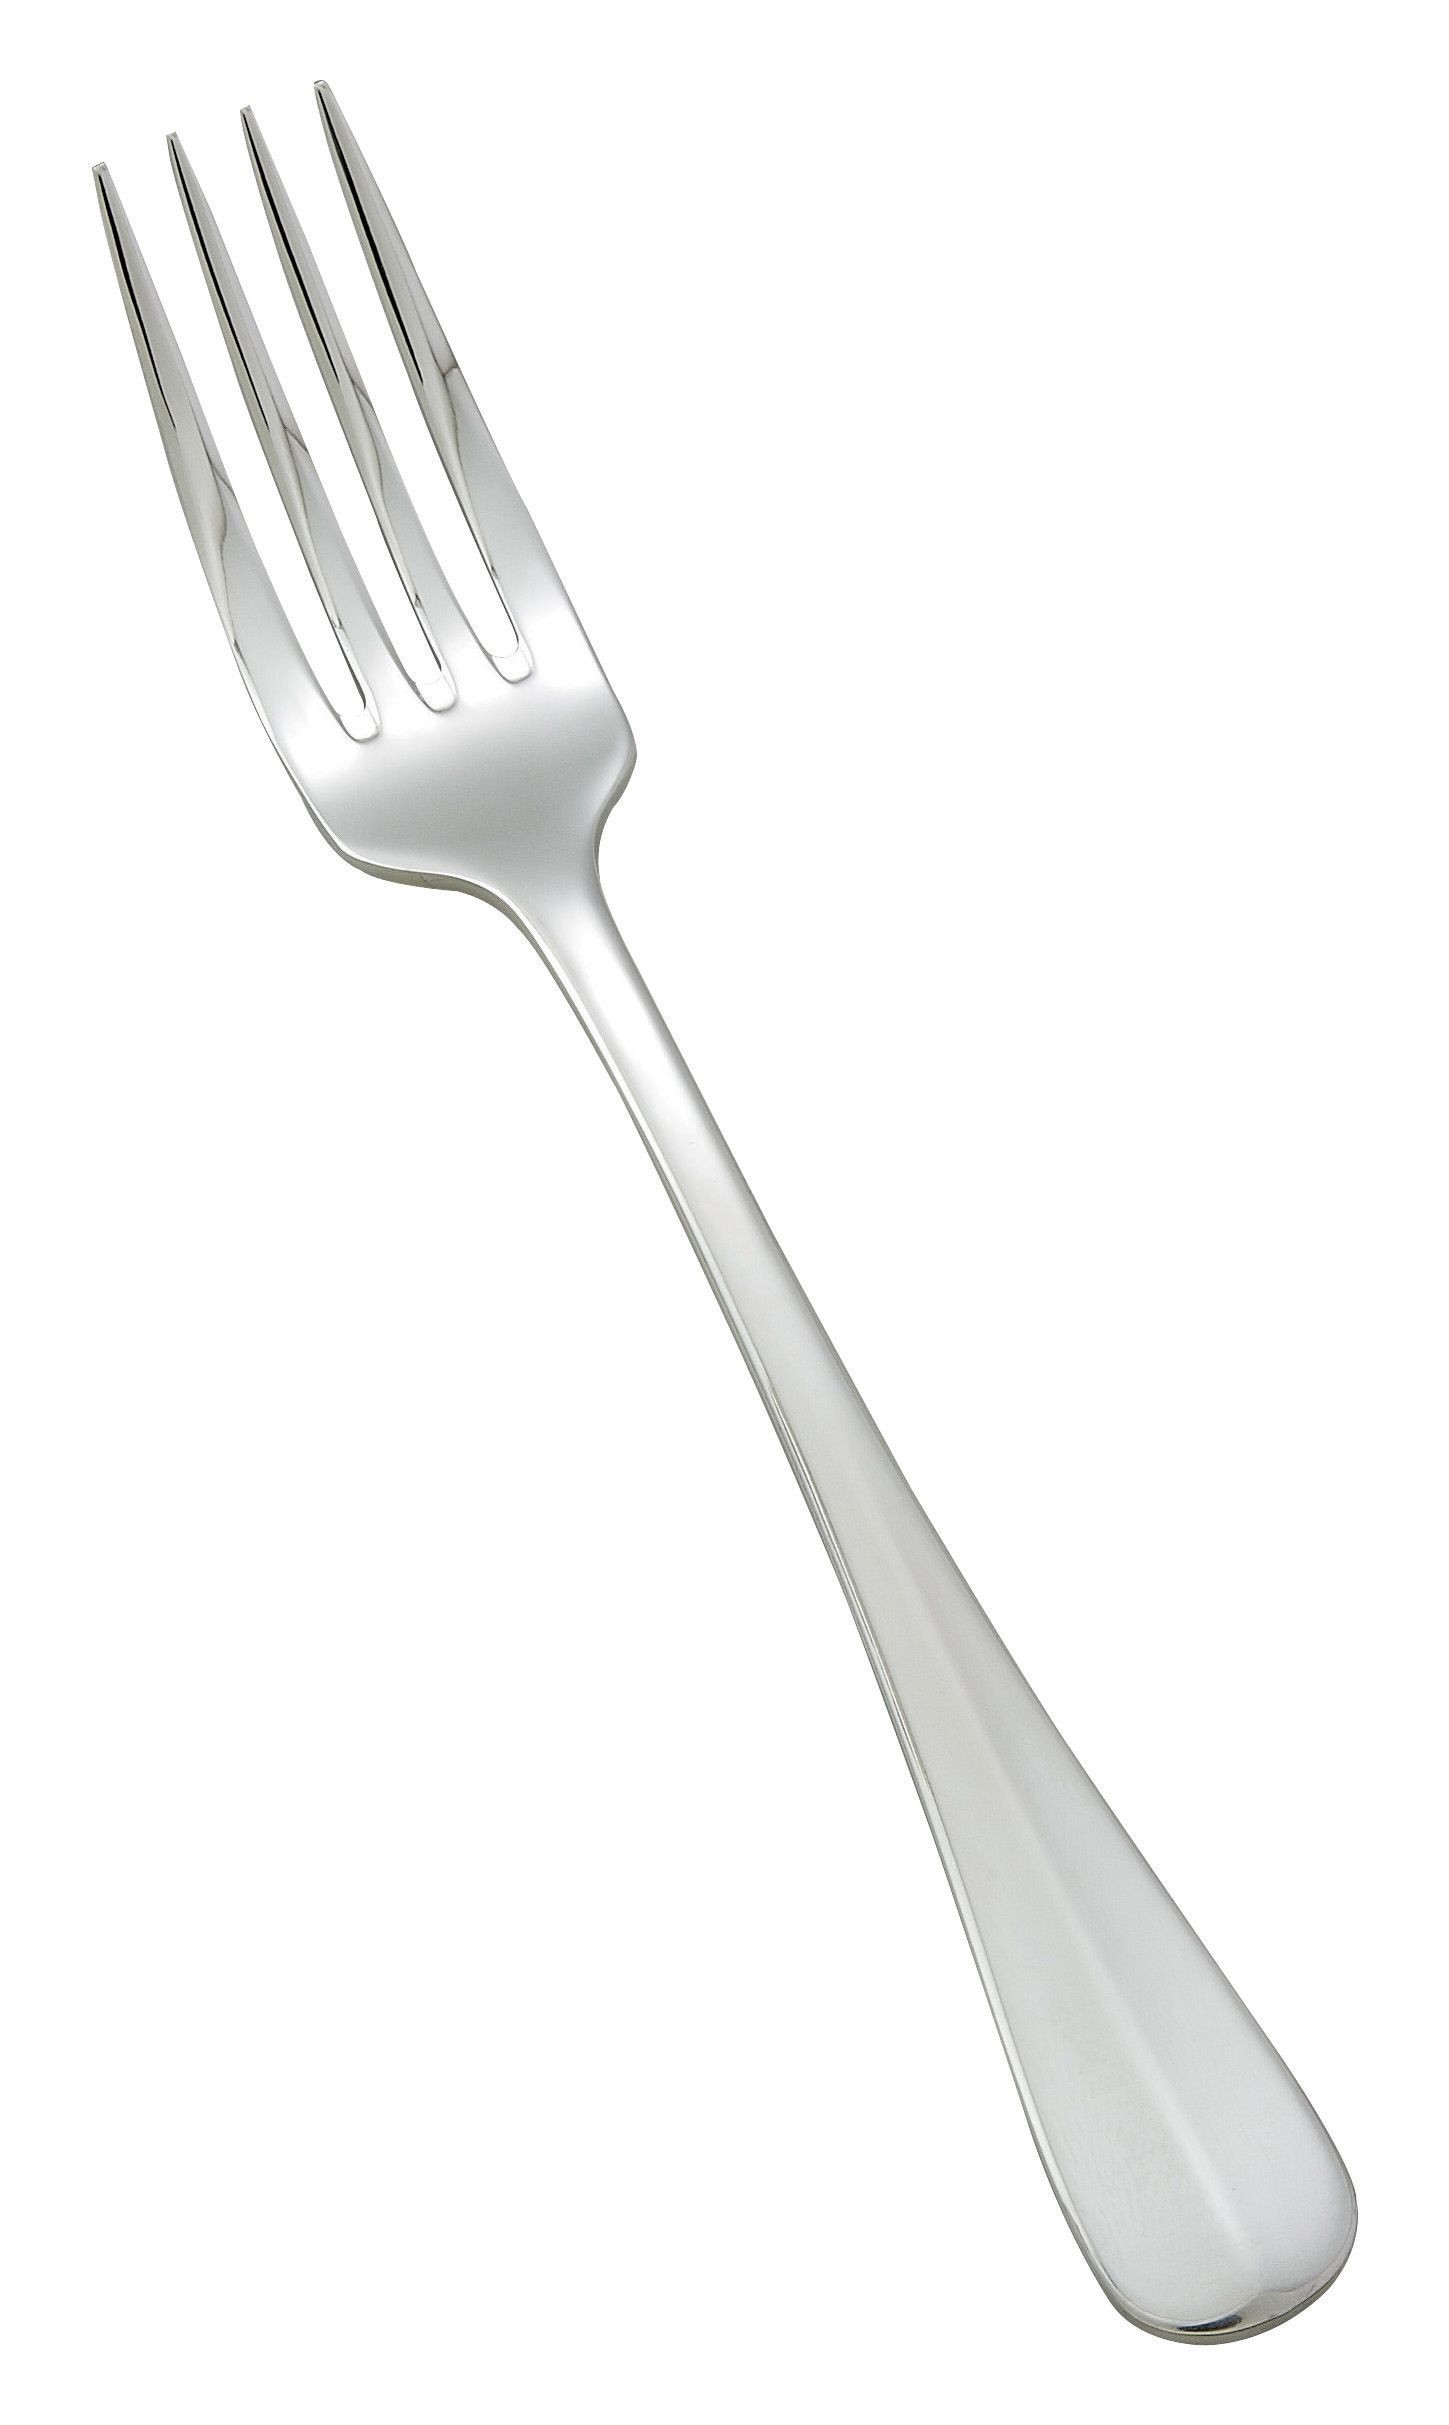 Dinner Forks-0034-05 18/8 Stainless Steel Stanford Design Winco 0034-05 Dinner Fork Extra Heavy 